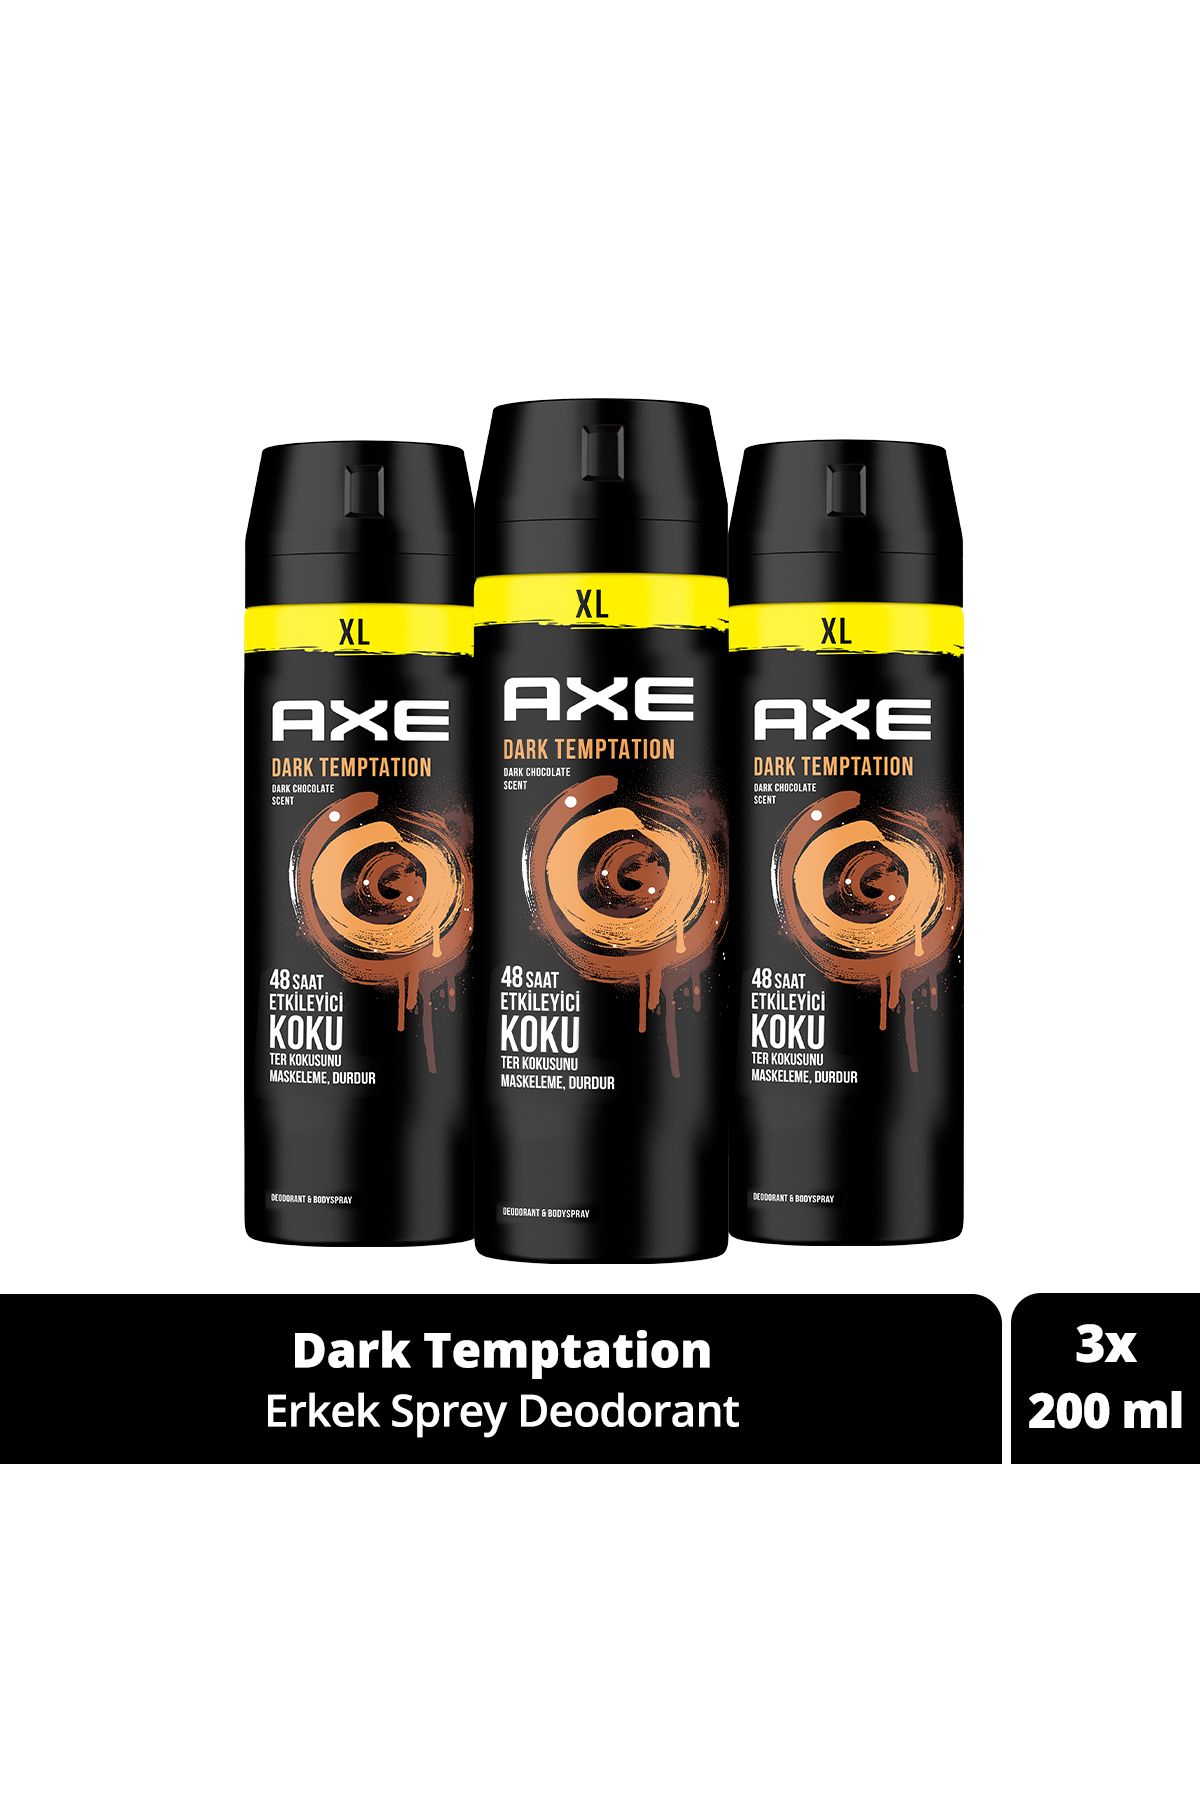 Axe Erkek Sprey Deodorant Dark Temptation Xl 48 Saat Etkileyici Koku 200 ml X3 Adet